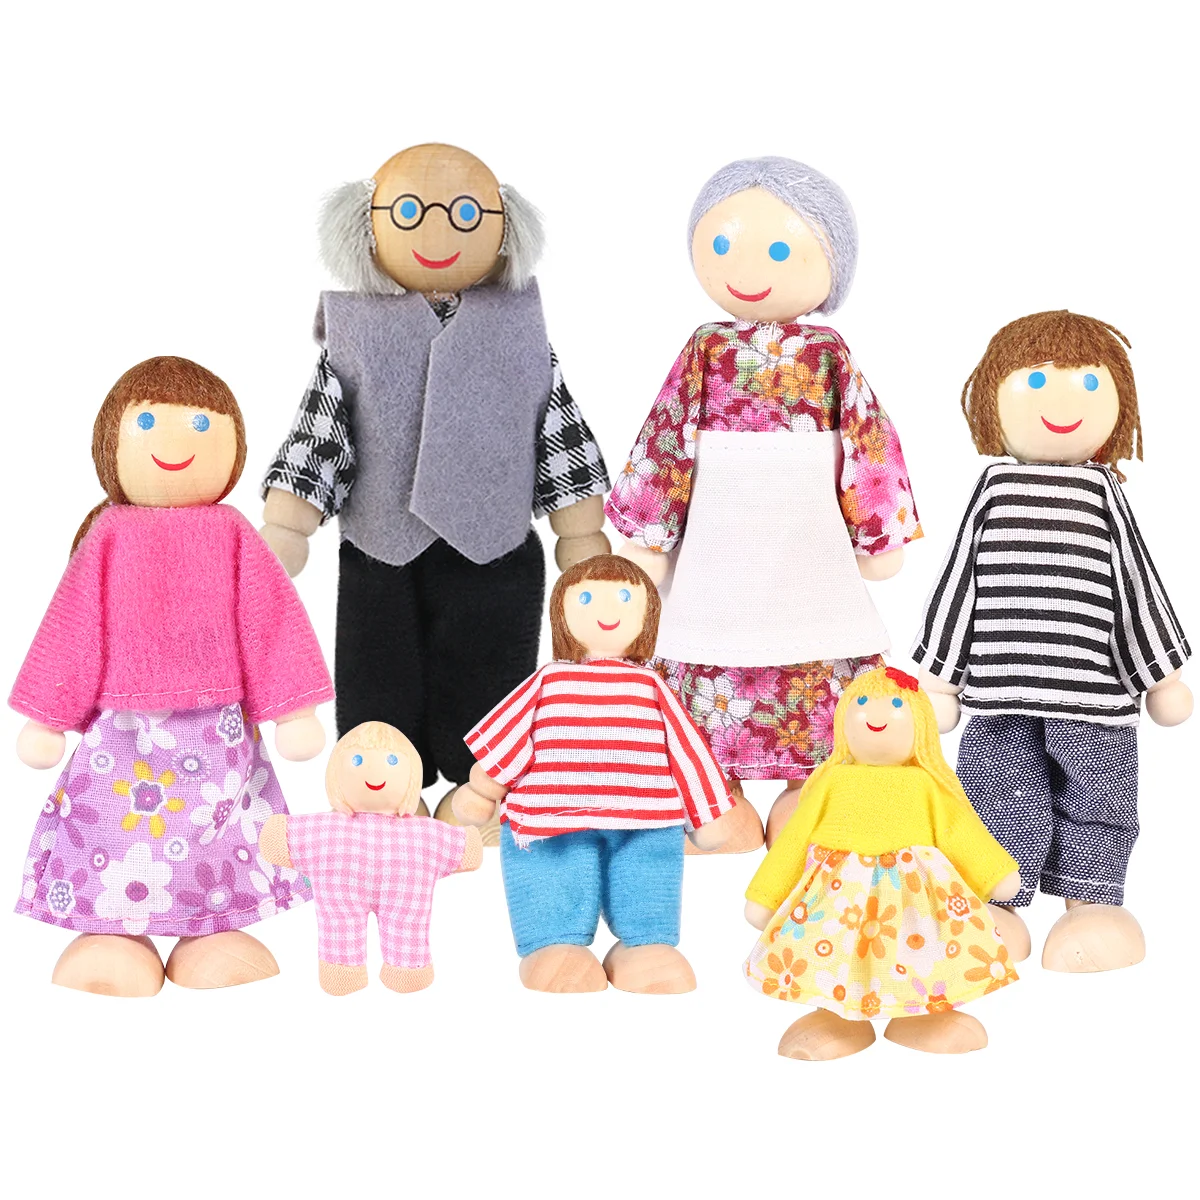 

1 Набор из 7 семейных кукол, деревянные куклы, комплект для ролевых игр для дома, детские фигурки, подарок